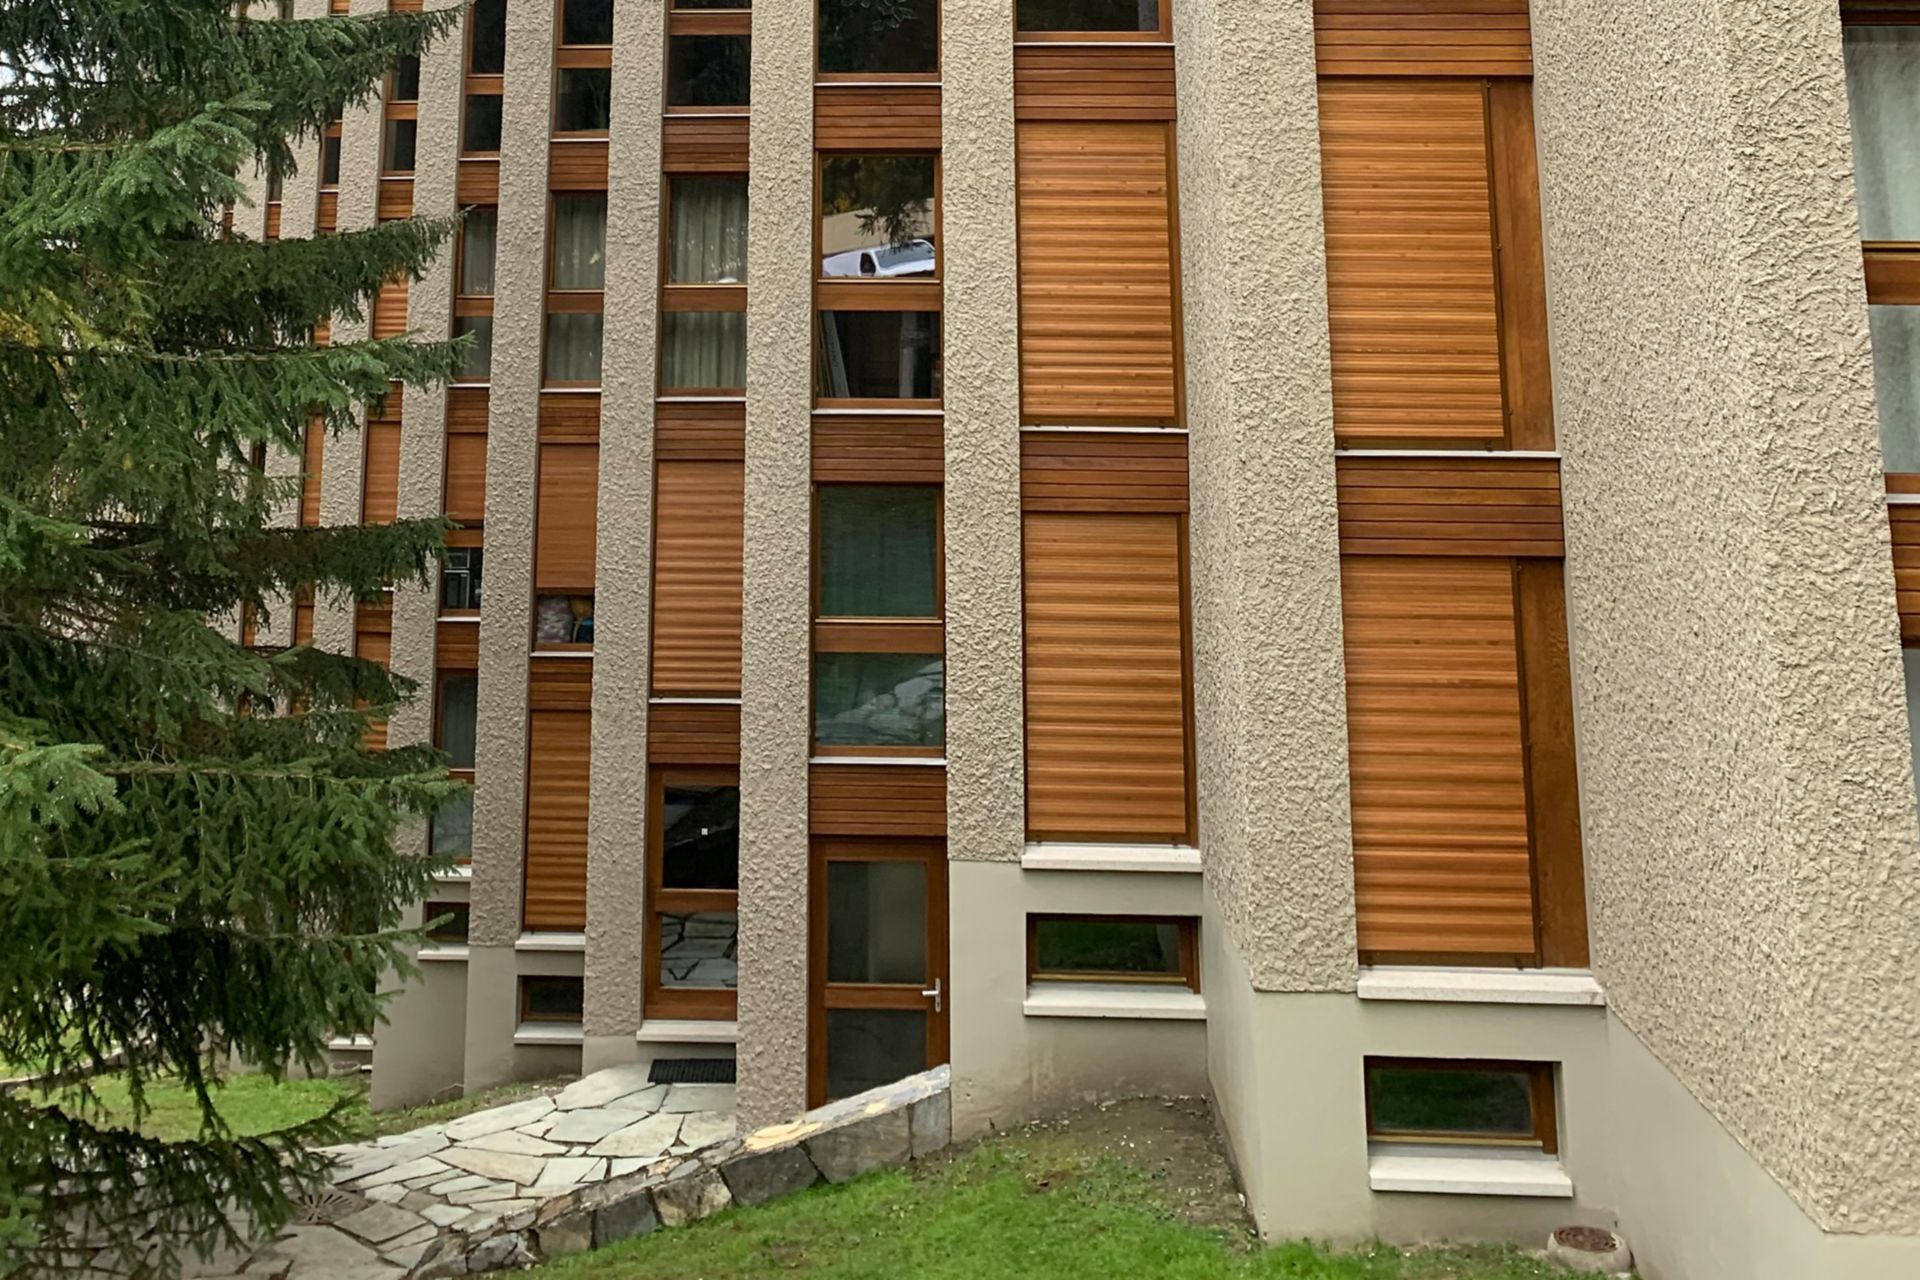 Beton- und Fassadenputzsanierung an mehrstöckigem Wohnhaus